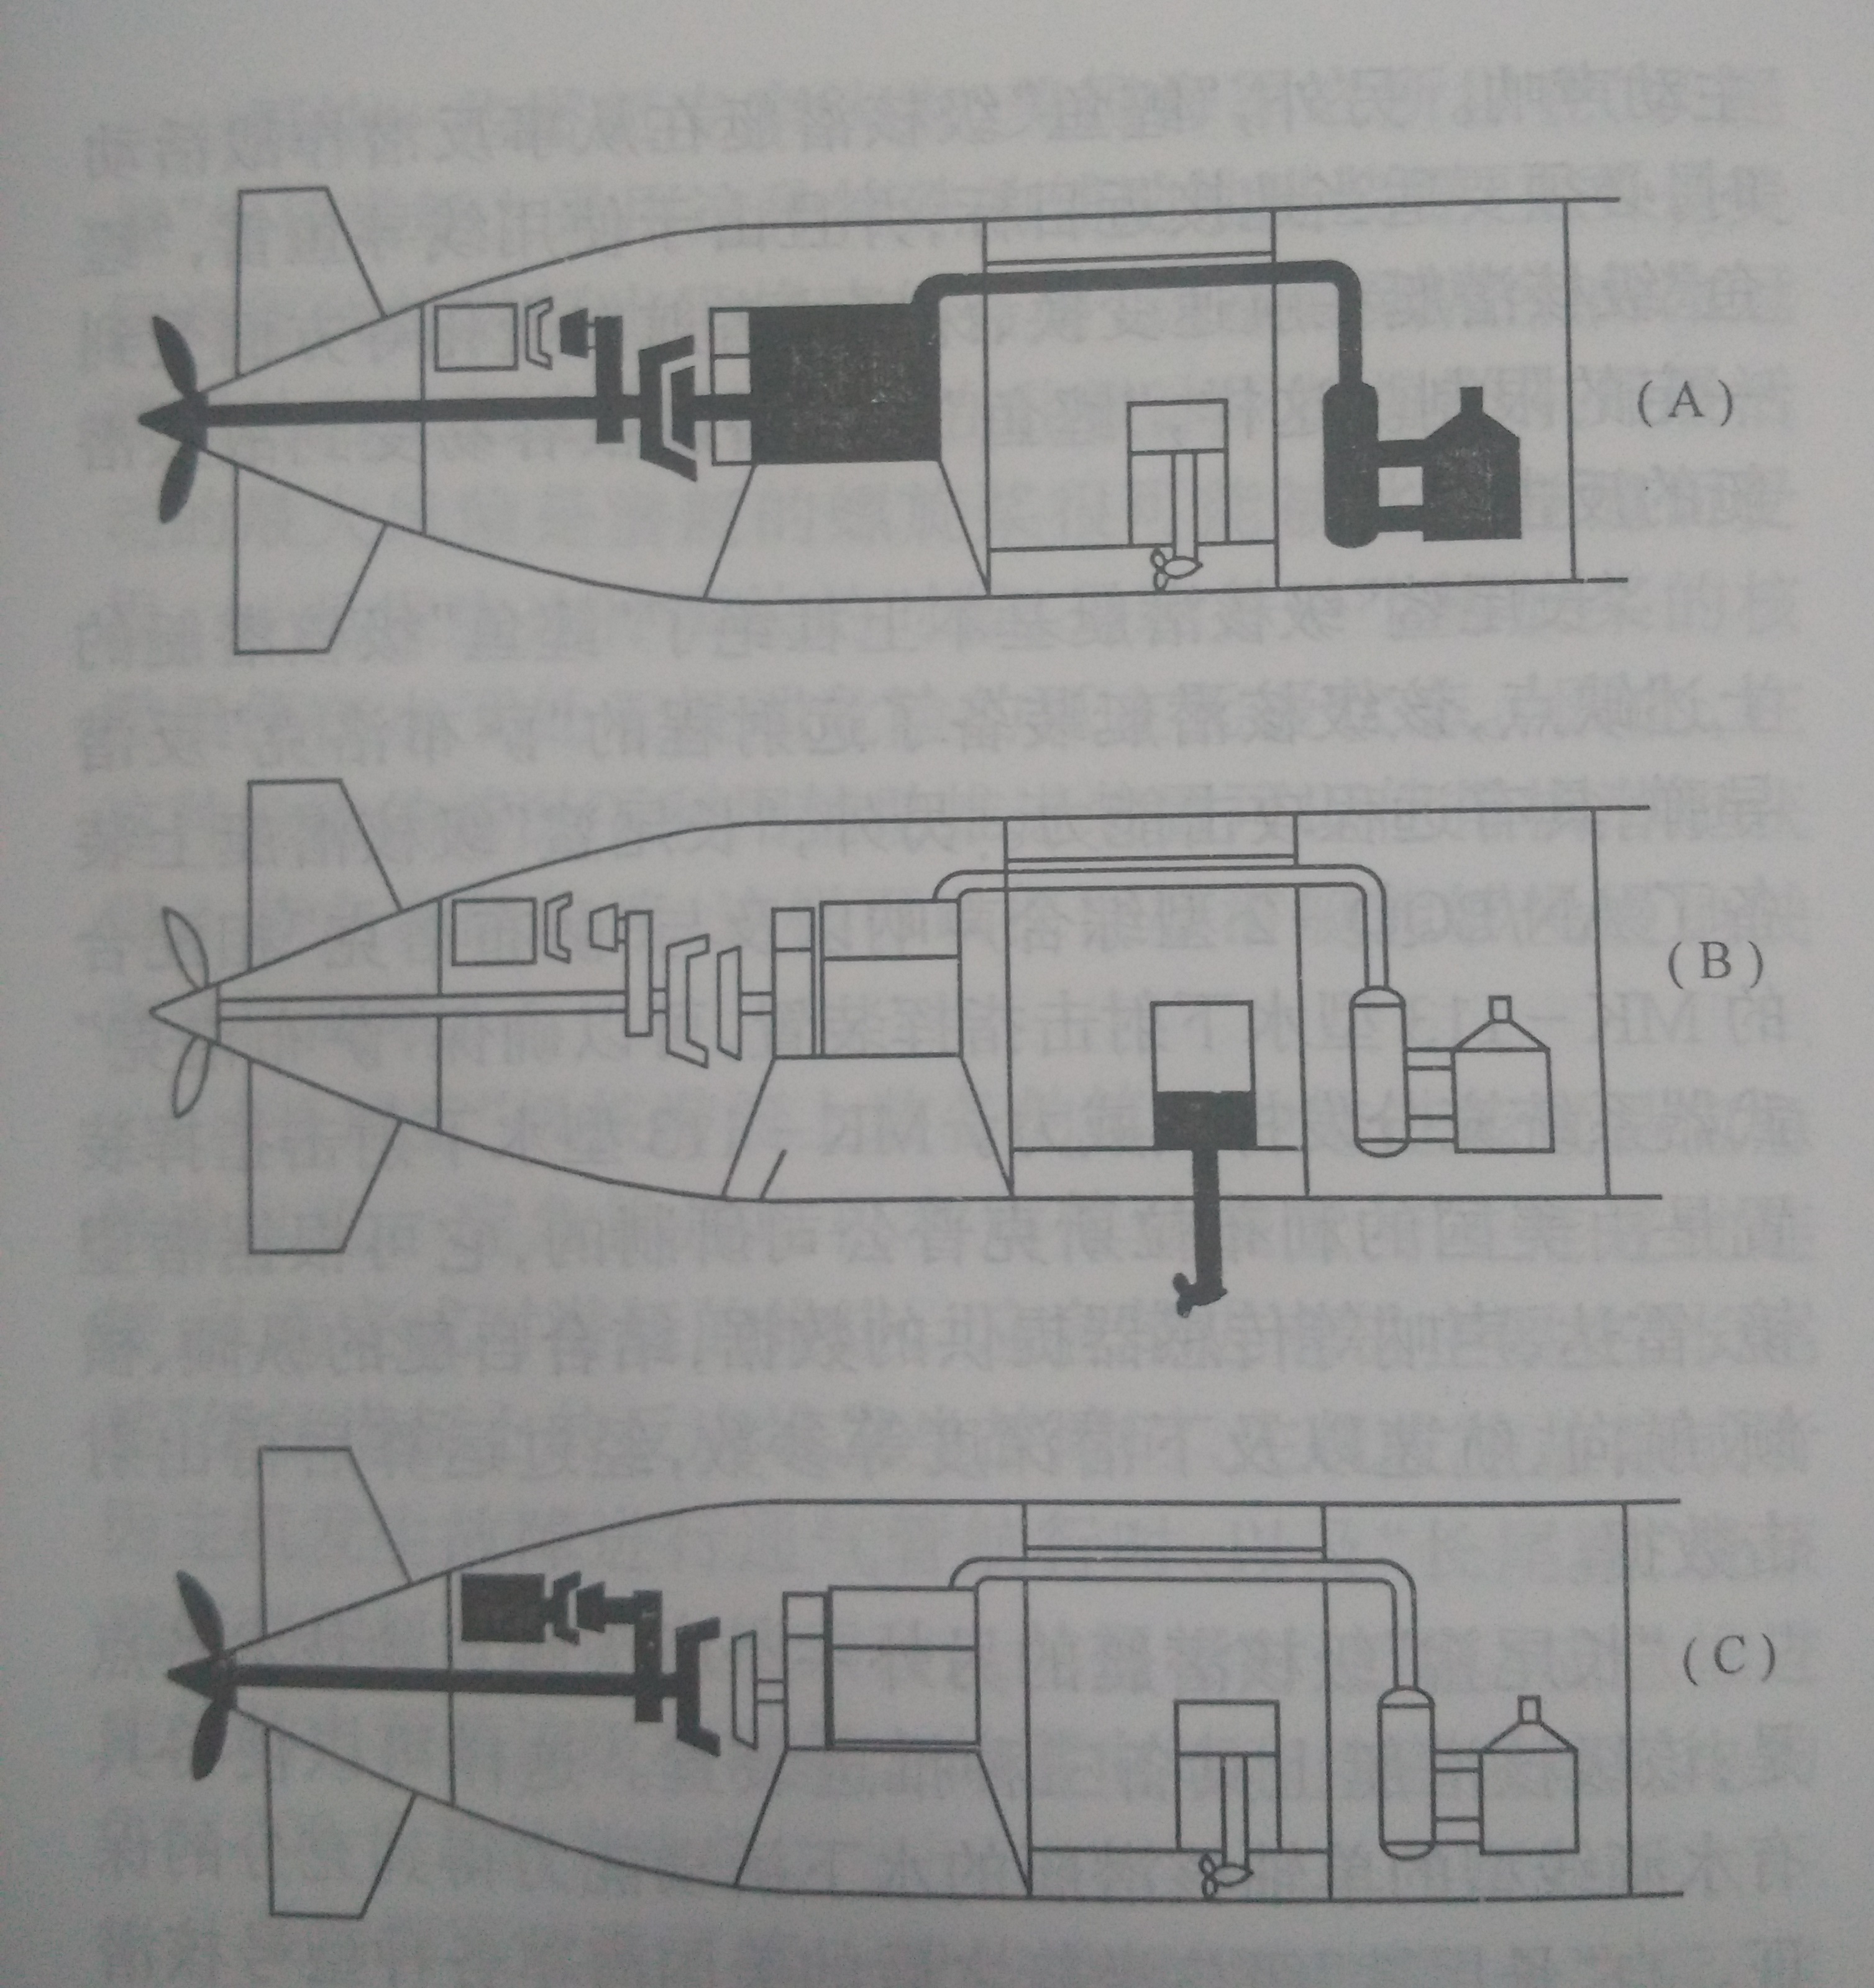 三種推進裝置-A主推進，B輔助推進，C應急推進